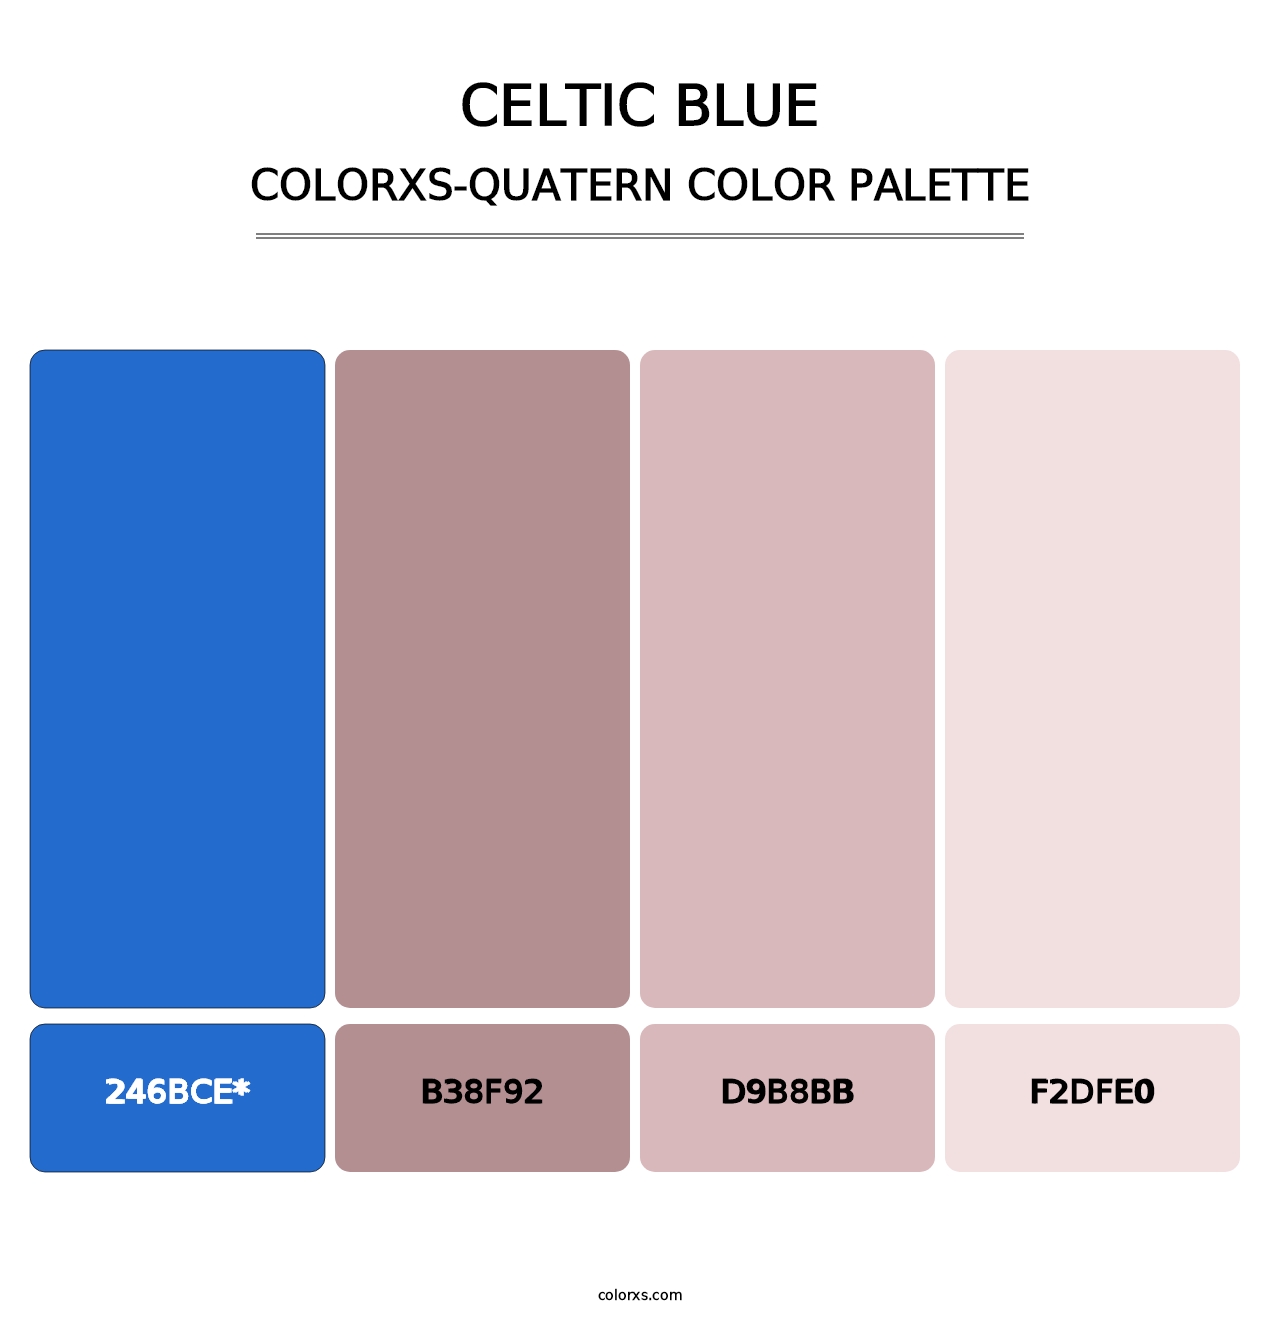 Celtic Blue - Colorxs Quatern Palette